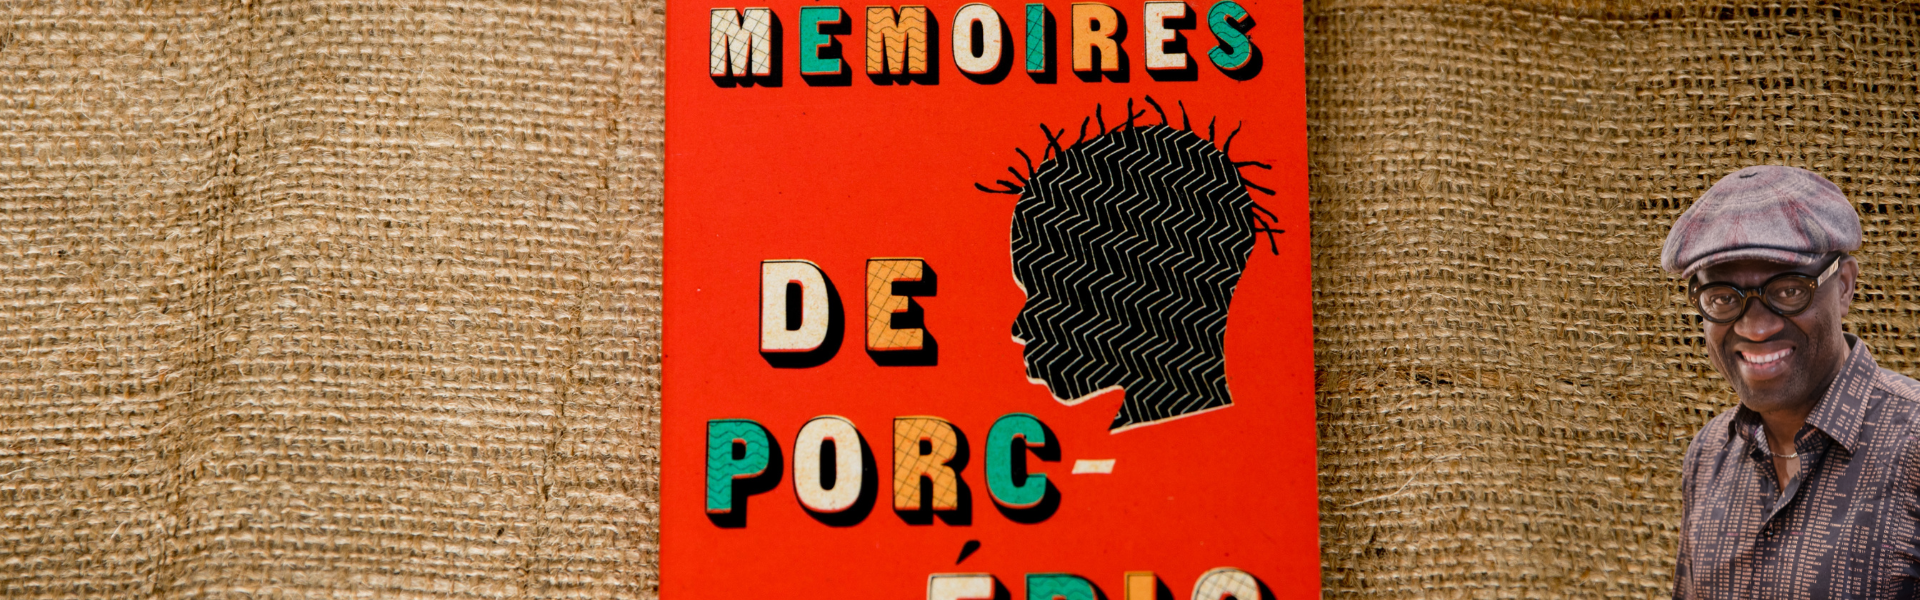 Mémoires de porc-épic de Alain Mabanckou